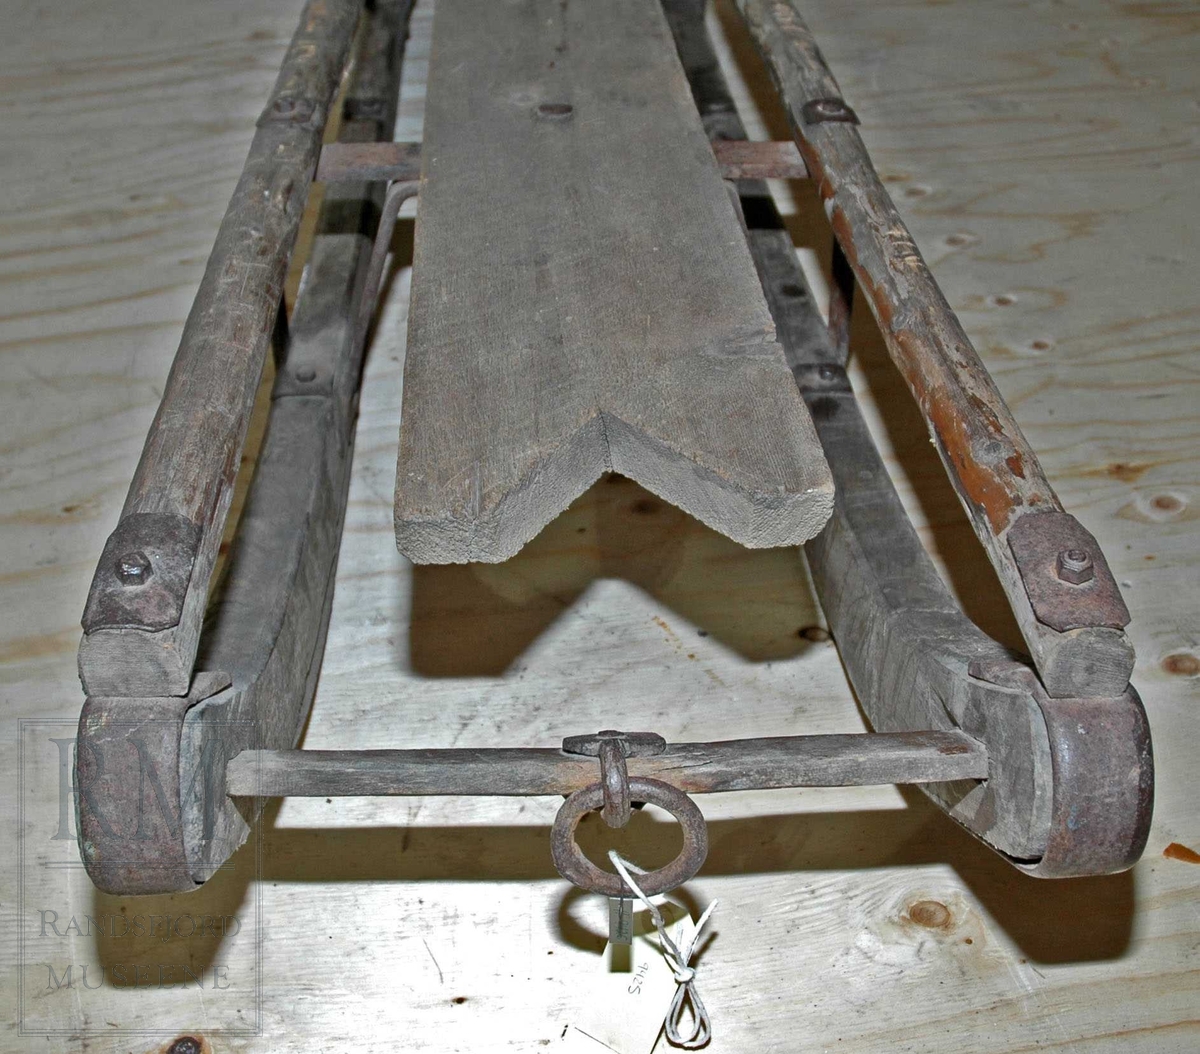 lang kjelke med konstruksjon av tre. jernbeslåtte meier. Setet har en V-form foran. På begge sidene av setet er det en trestokk, foran en ring til å feste tau.